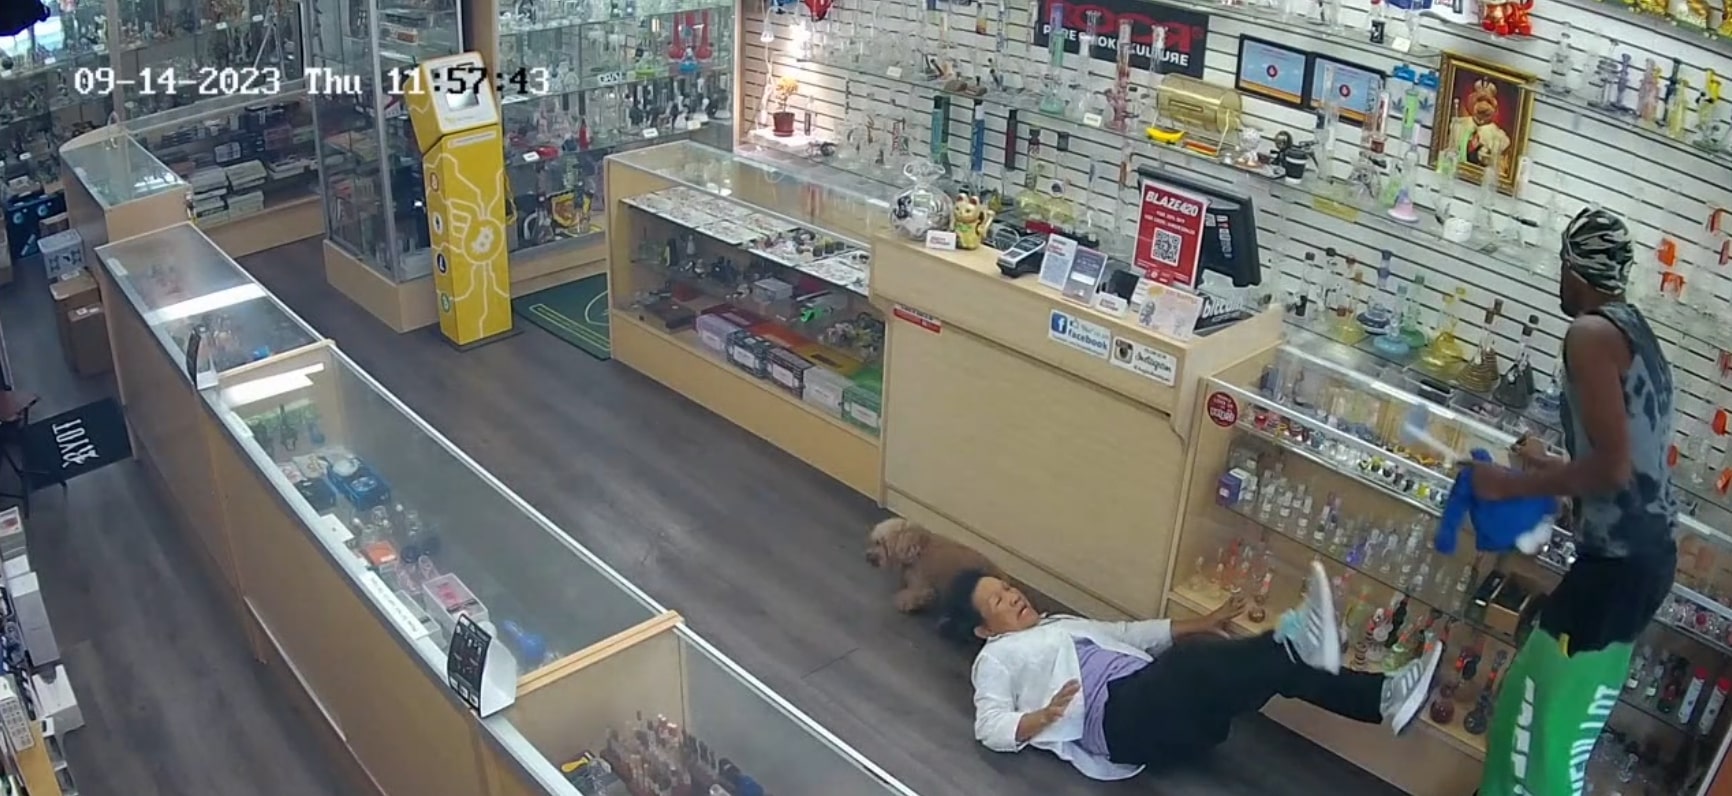 Chinatown store employee thrown to ground